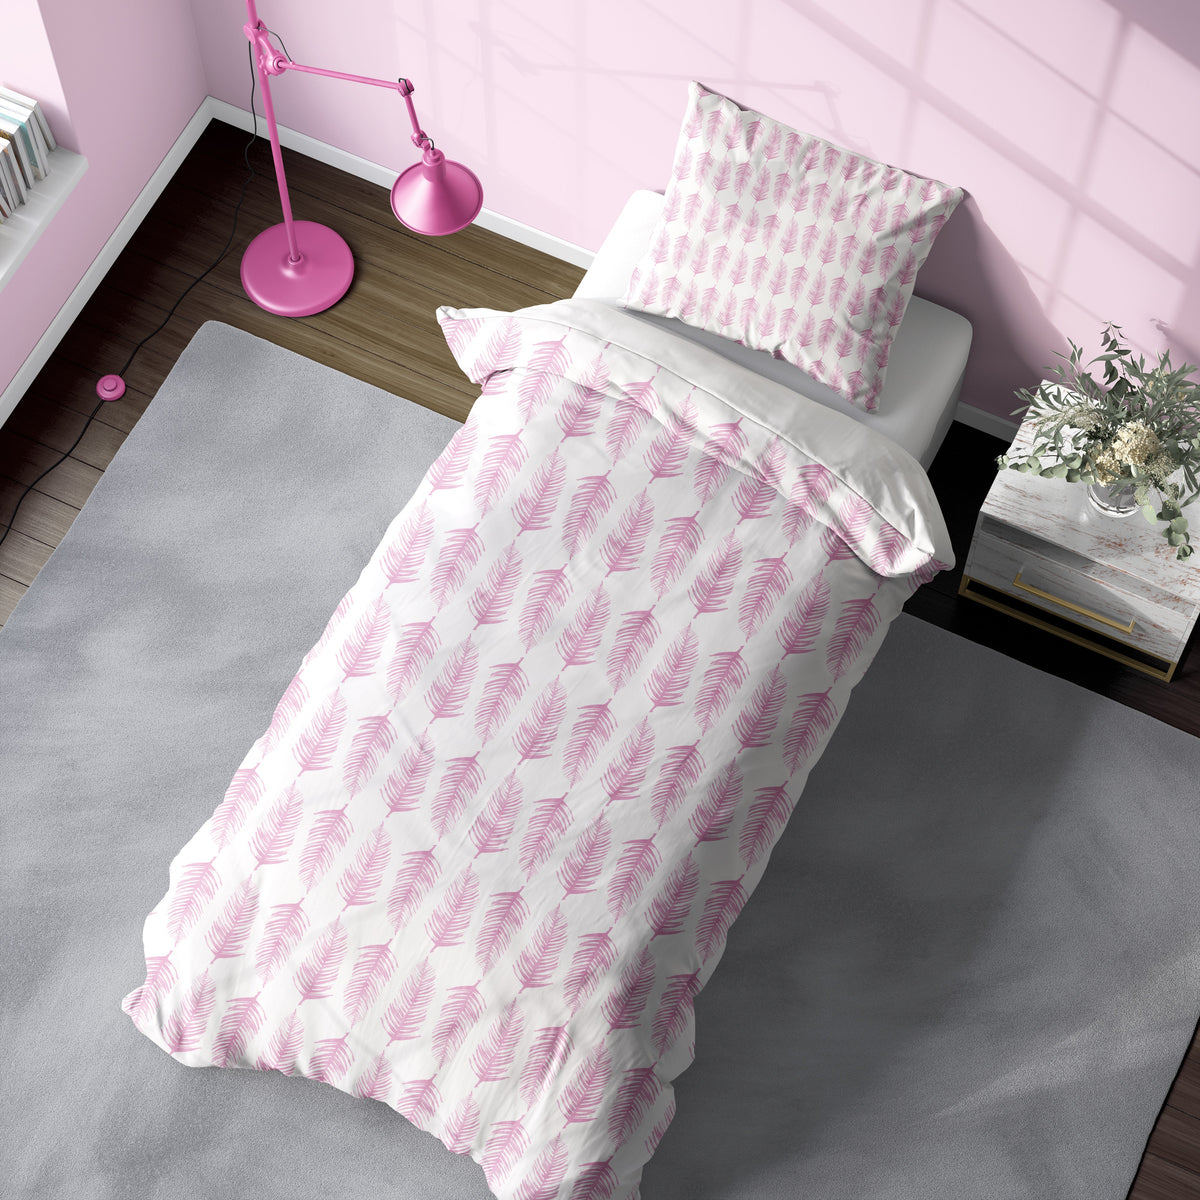 Duvet - Plumes Hot Pink Bedding, Duvets MWW XL Twin 